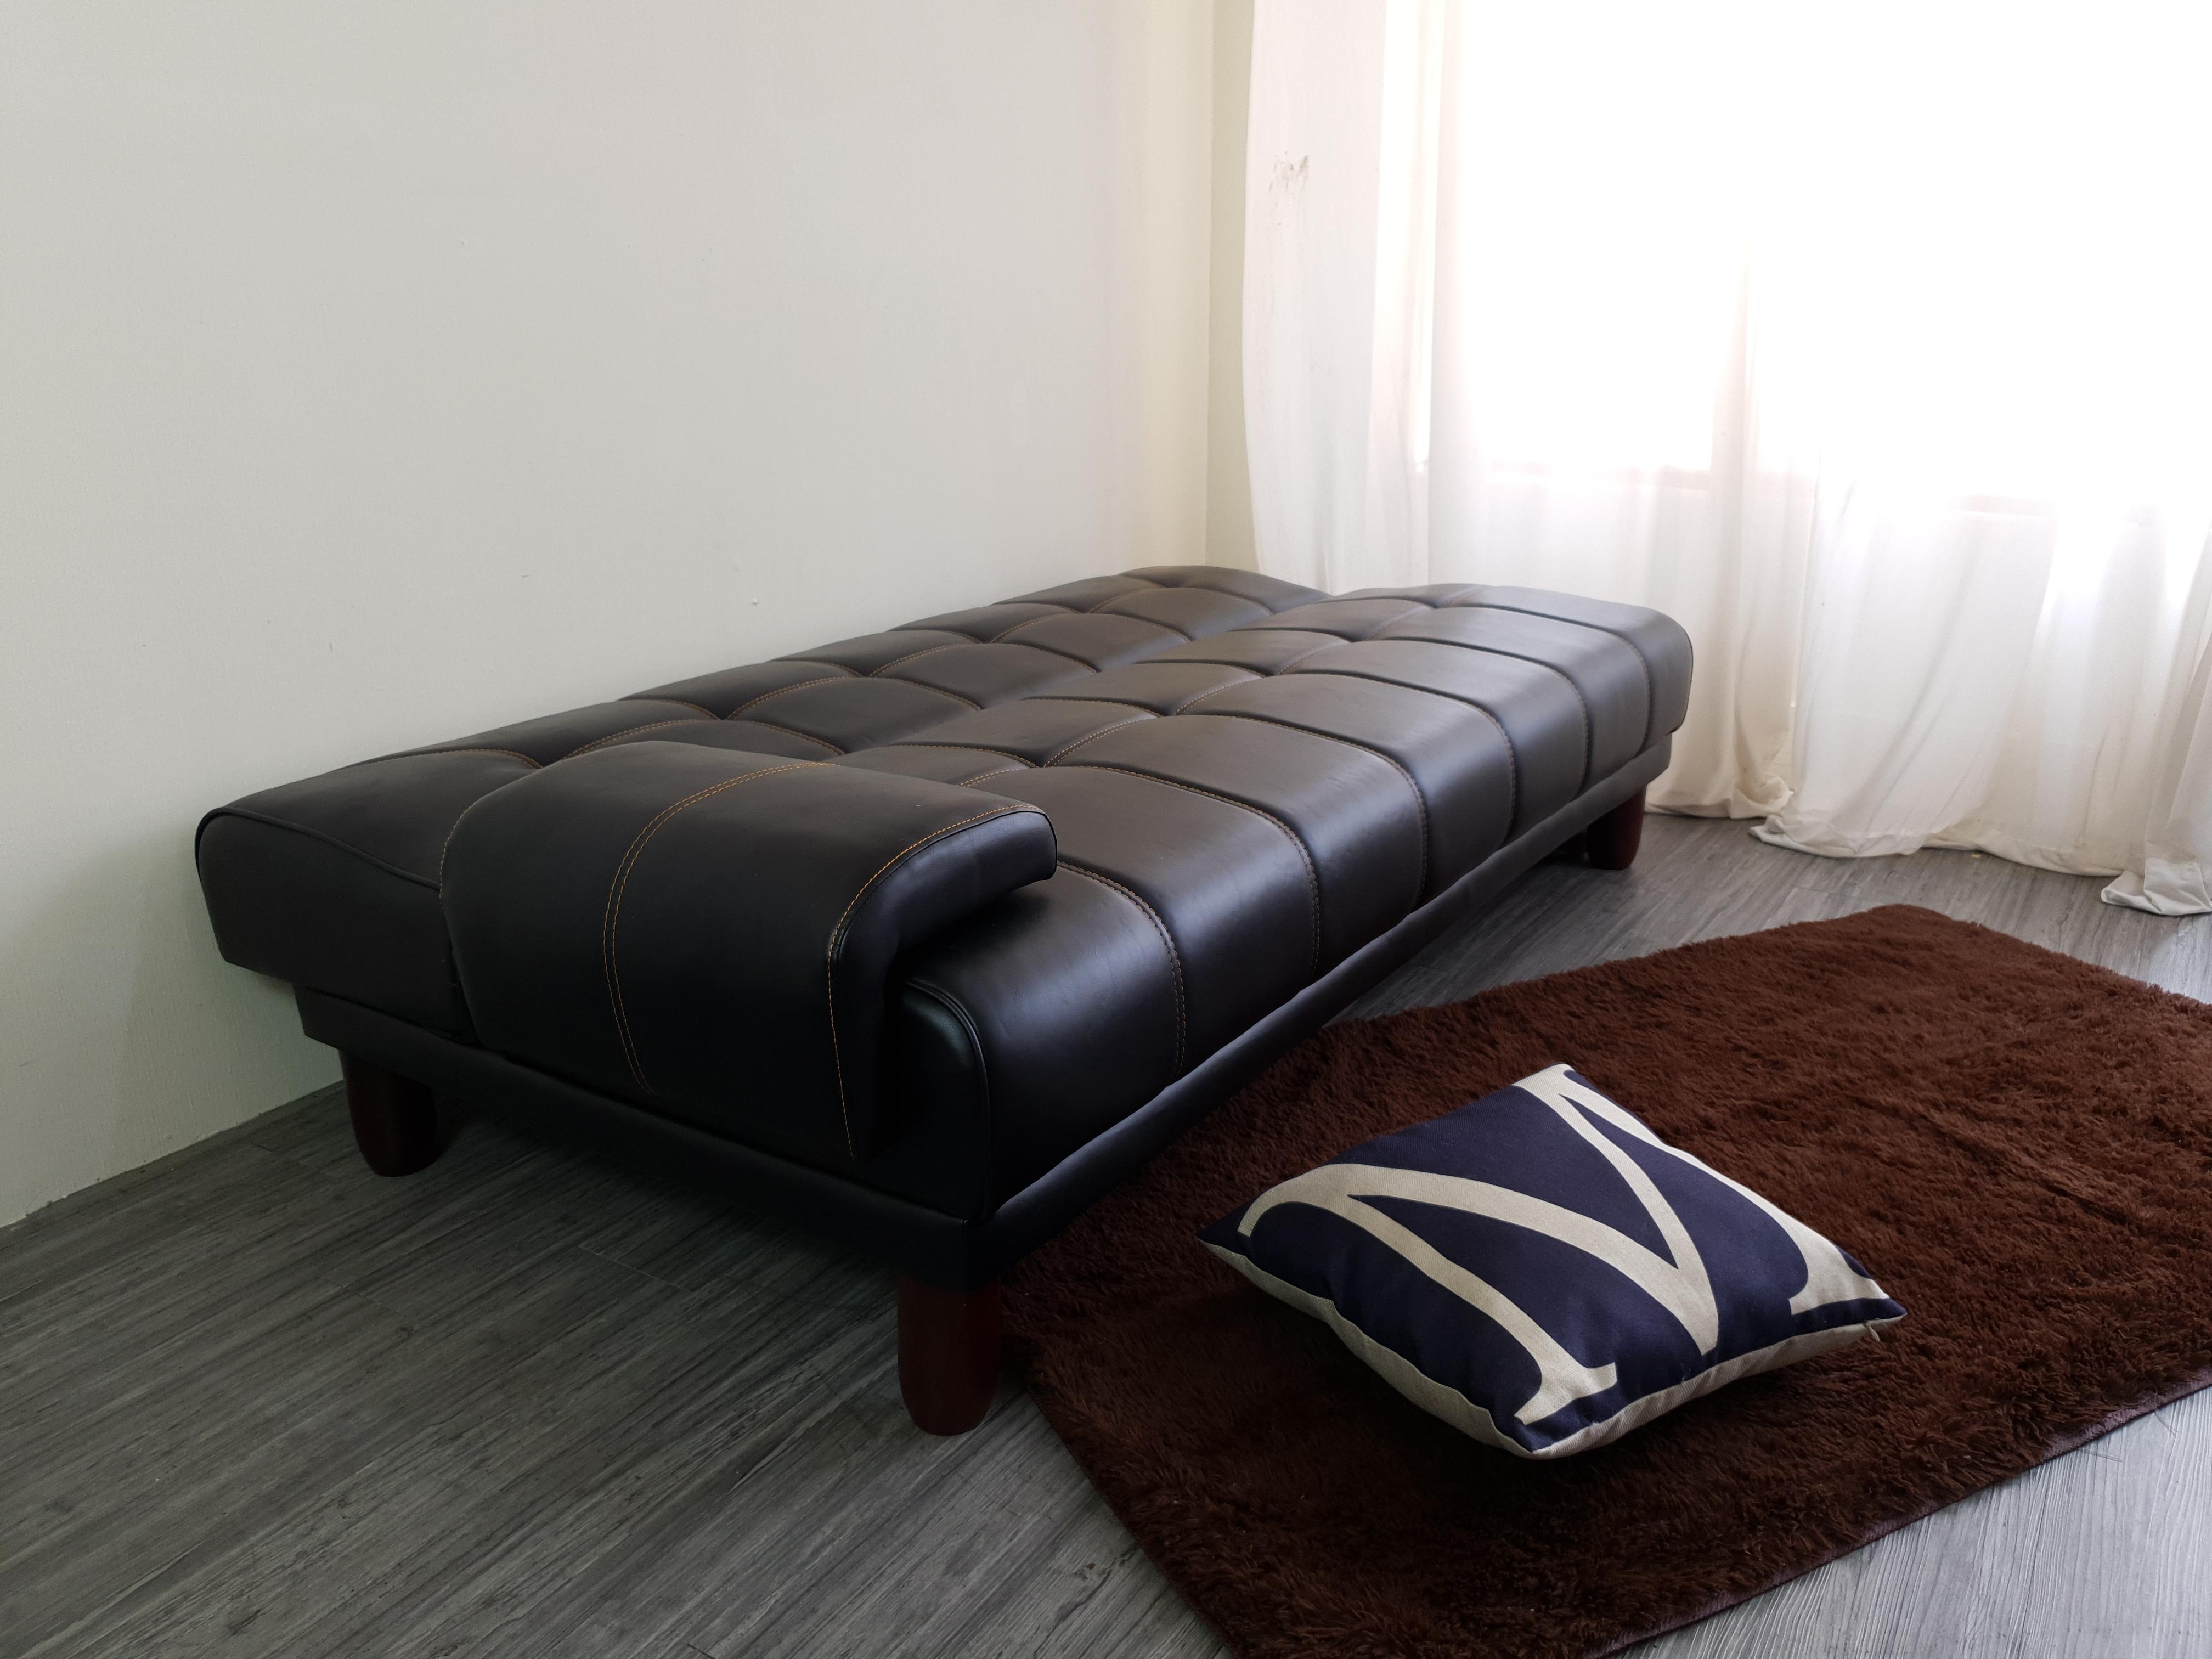 Sofa bed đa năng Juno sofa màu đen